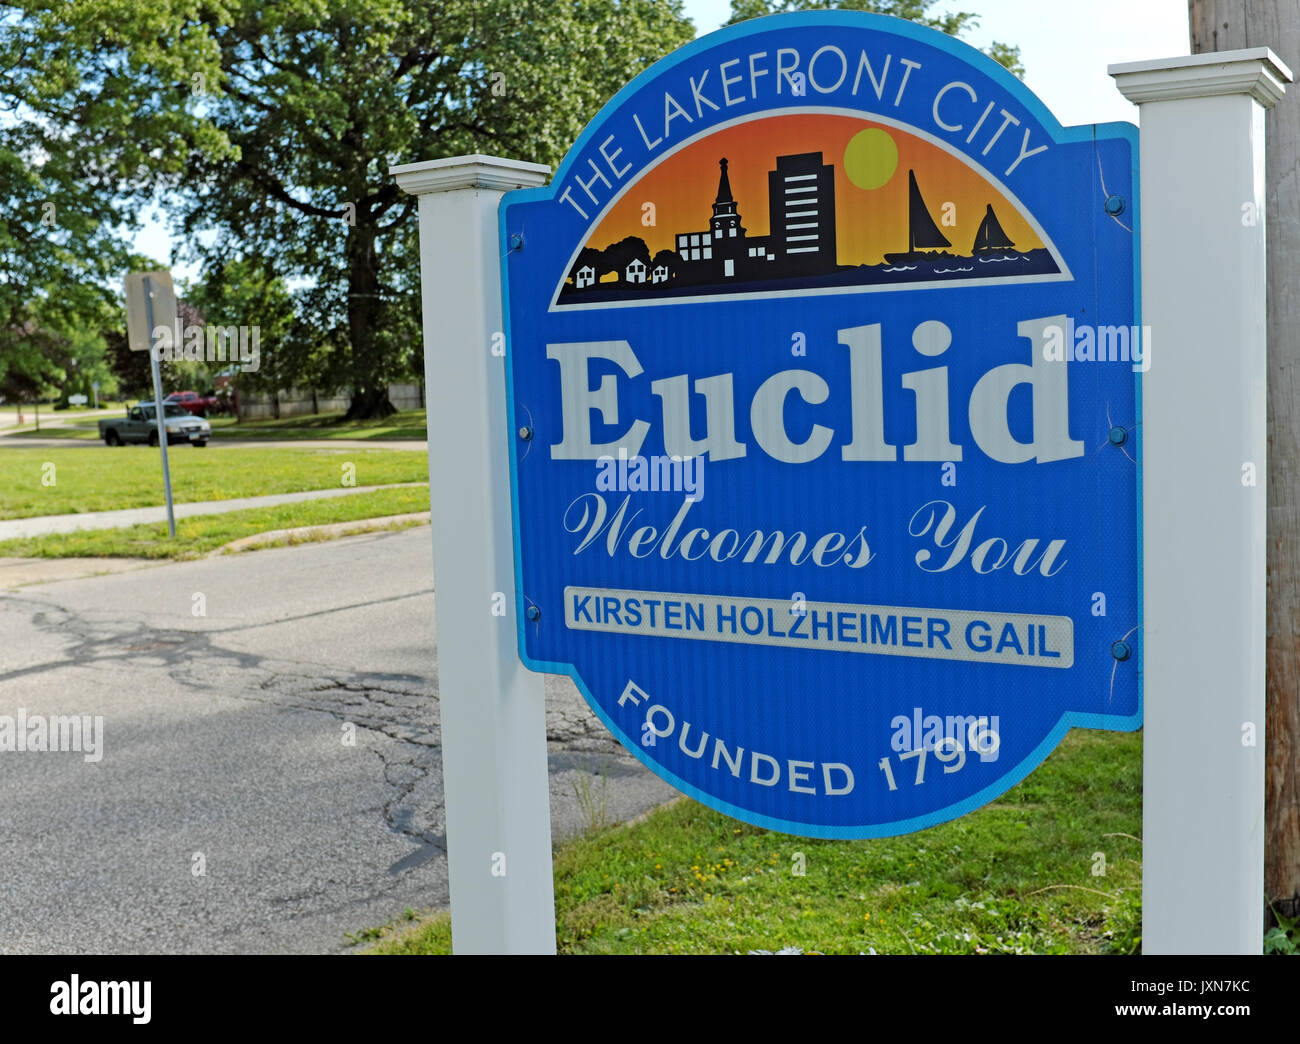 Melden Sie freundliche Menschen, die Stadt von Euklid, Ohio, USA. Ein Vorort von Cleveland, Ohio, dieses "Owl City" Host zu Berichtenswerten Ereignisse wurde. Stockfoto